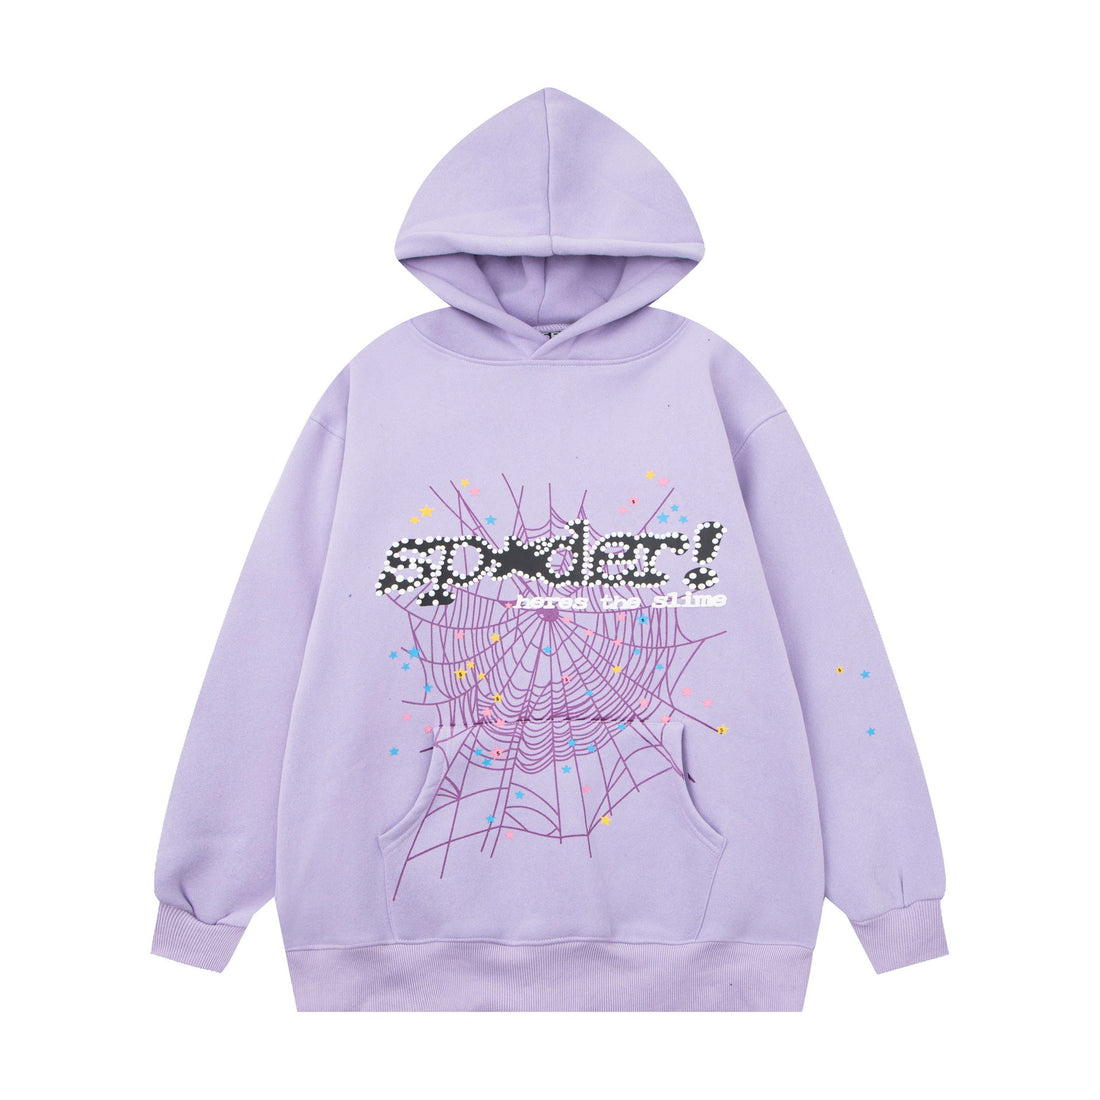 Chic Purple Sp5der Hoodie - Trendy Web and Star Print Hooded Sweatshirt - Seakoff